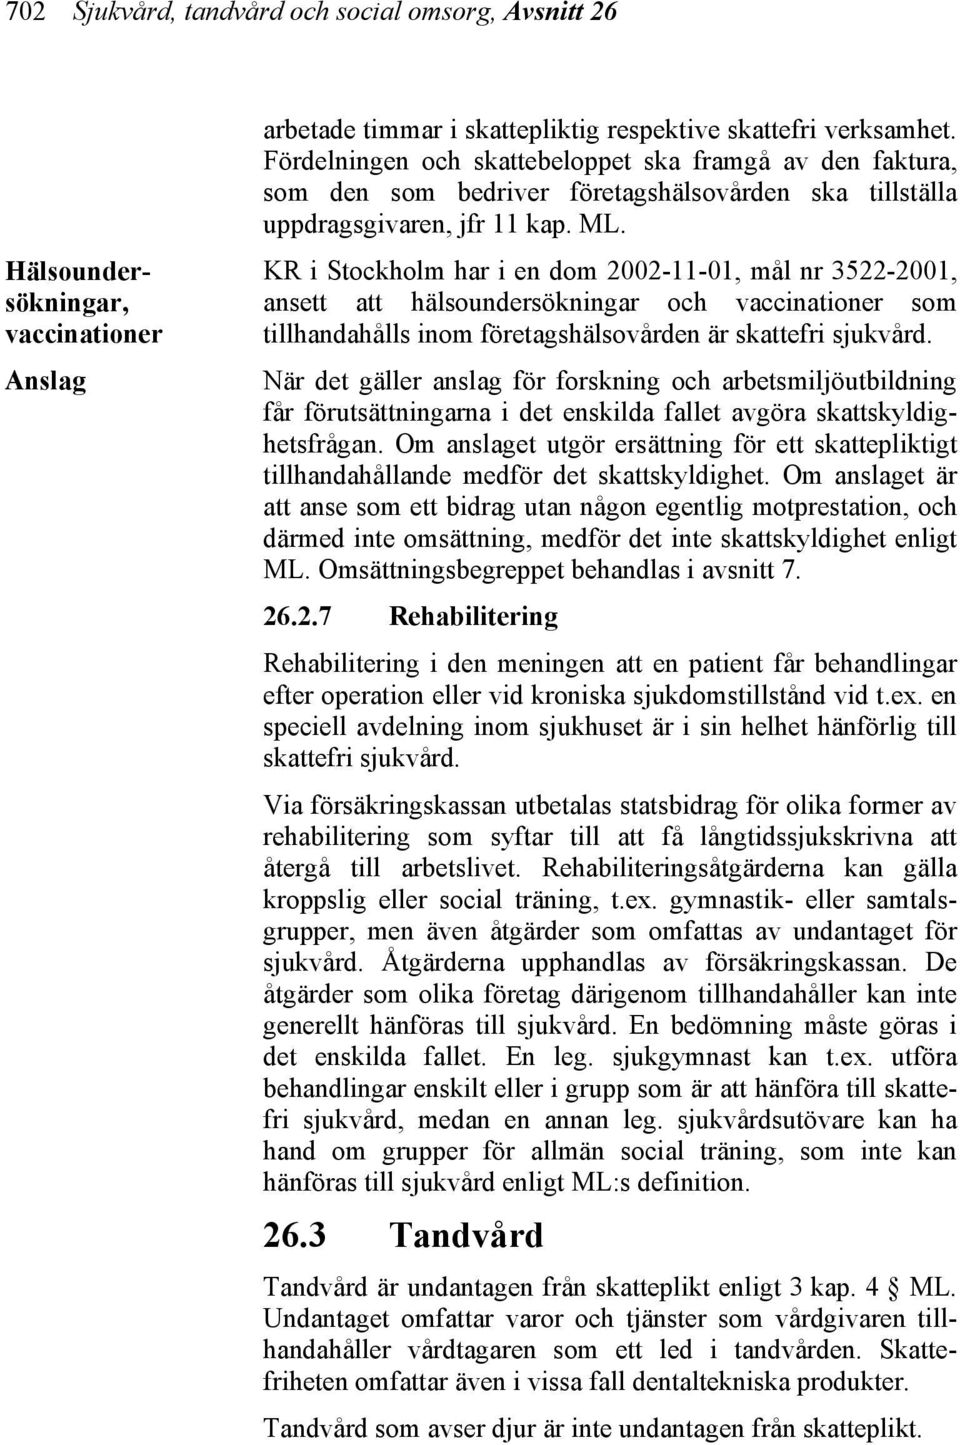 KR i Stockholm har i en dom 2002-11-01, mål nr 3522-2001, ansett att hälsoundersökningar och vaccinationer som tillhandahålls inom företagshälsovården är skattefri sjukvård.